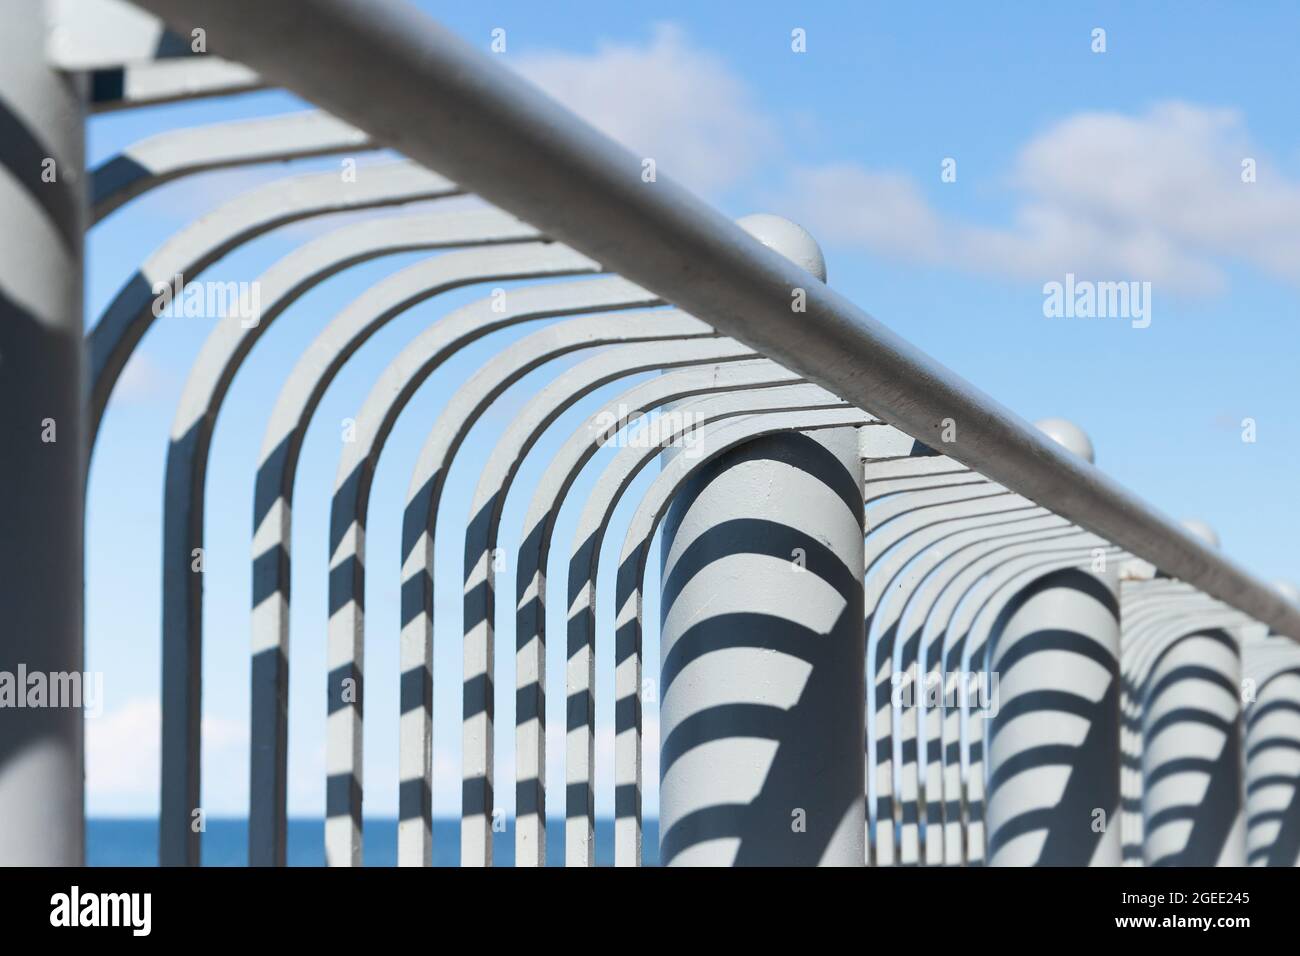 Dettagli astratti di architettura contemporanea, struttura di ringhiere metalliche con motivi d'ombra sotto il cielo blu nuvoloso Foto Stock